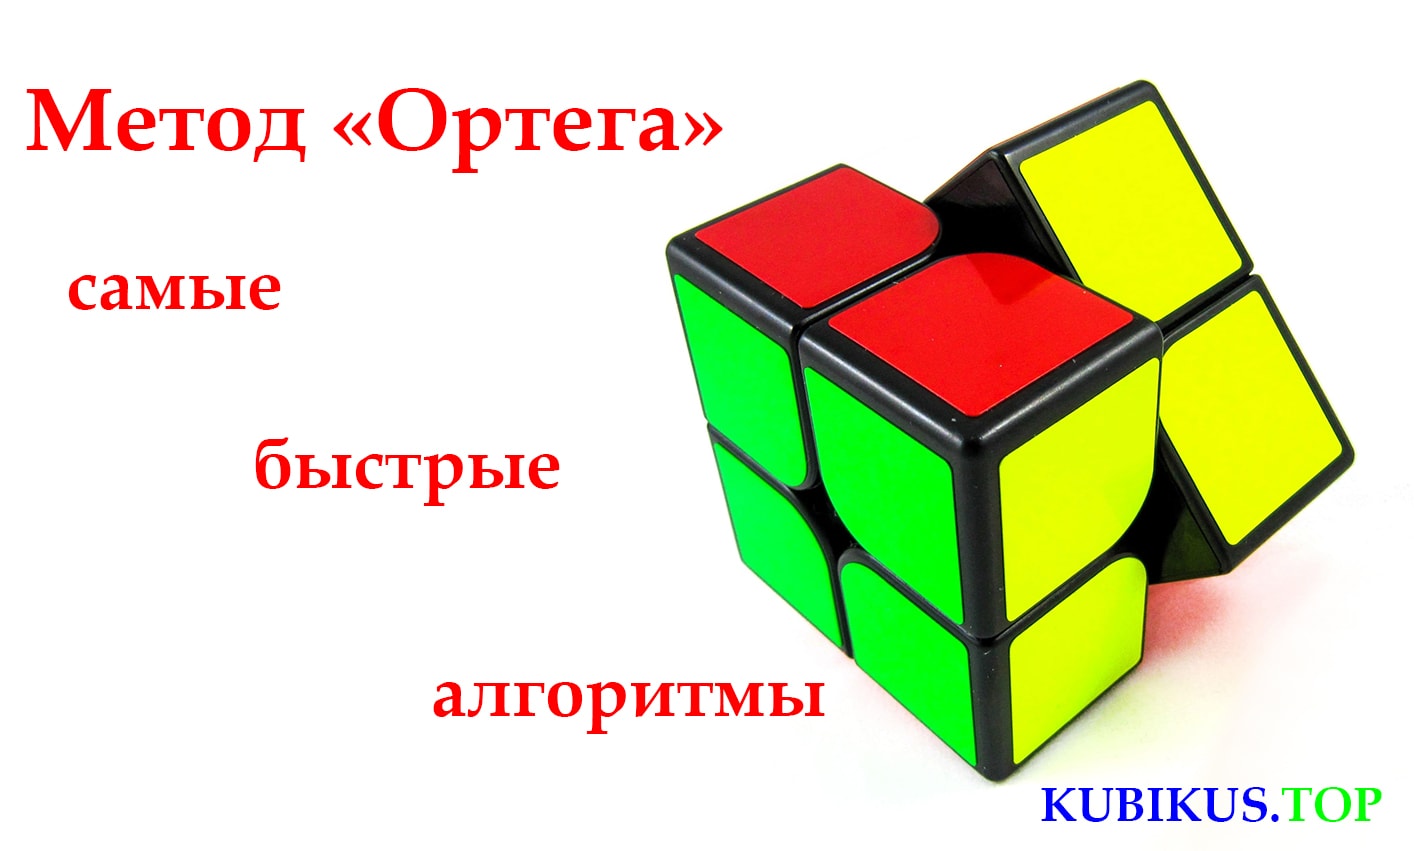 Приложение кубика рубика 2 на 2. Кубик Рубика 2 на 2 метод Ортега. Метод Ортега кубик Рубика 2х2. Кубик 2х2 метод Ортега. Комбинация Запад кубик Рубика 2х2.